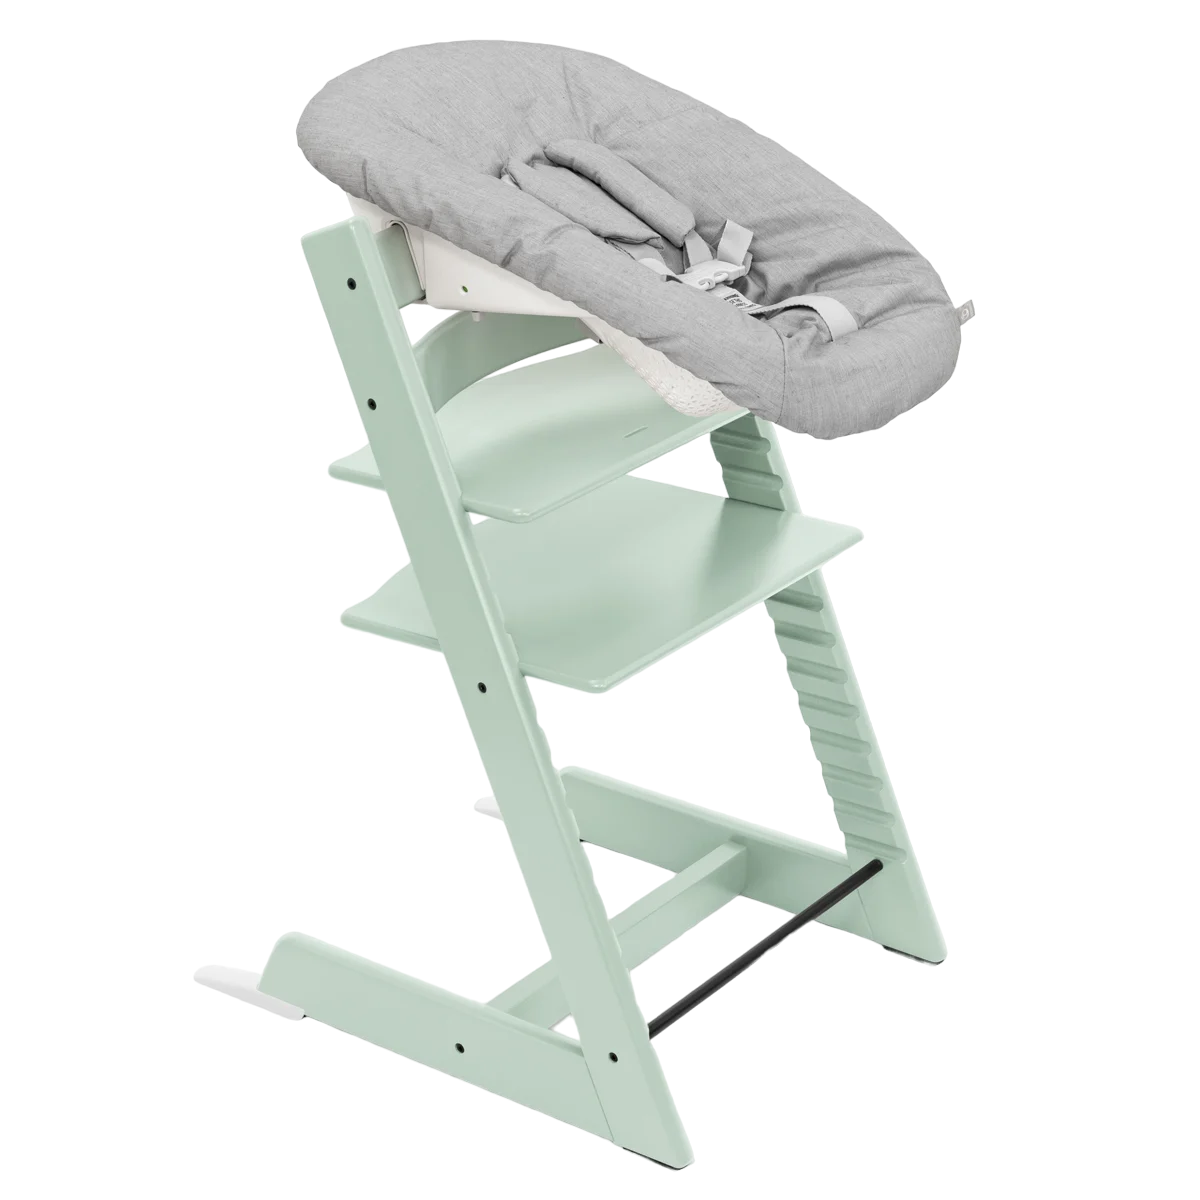 Набор Stokke Newborn Tripp Trapp Soft Mint: стульчик и кресло для новорожденных (k.100135.52) - фото 1